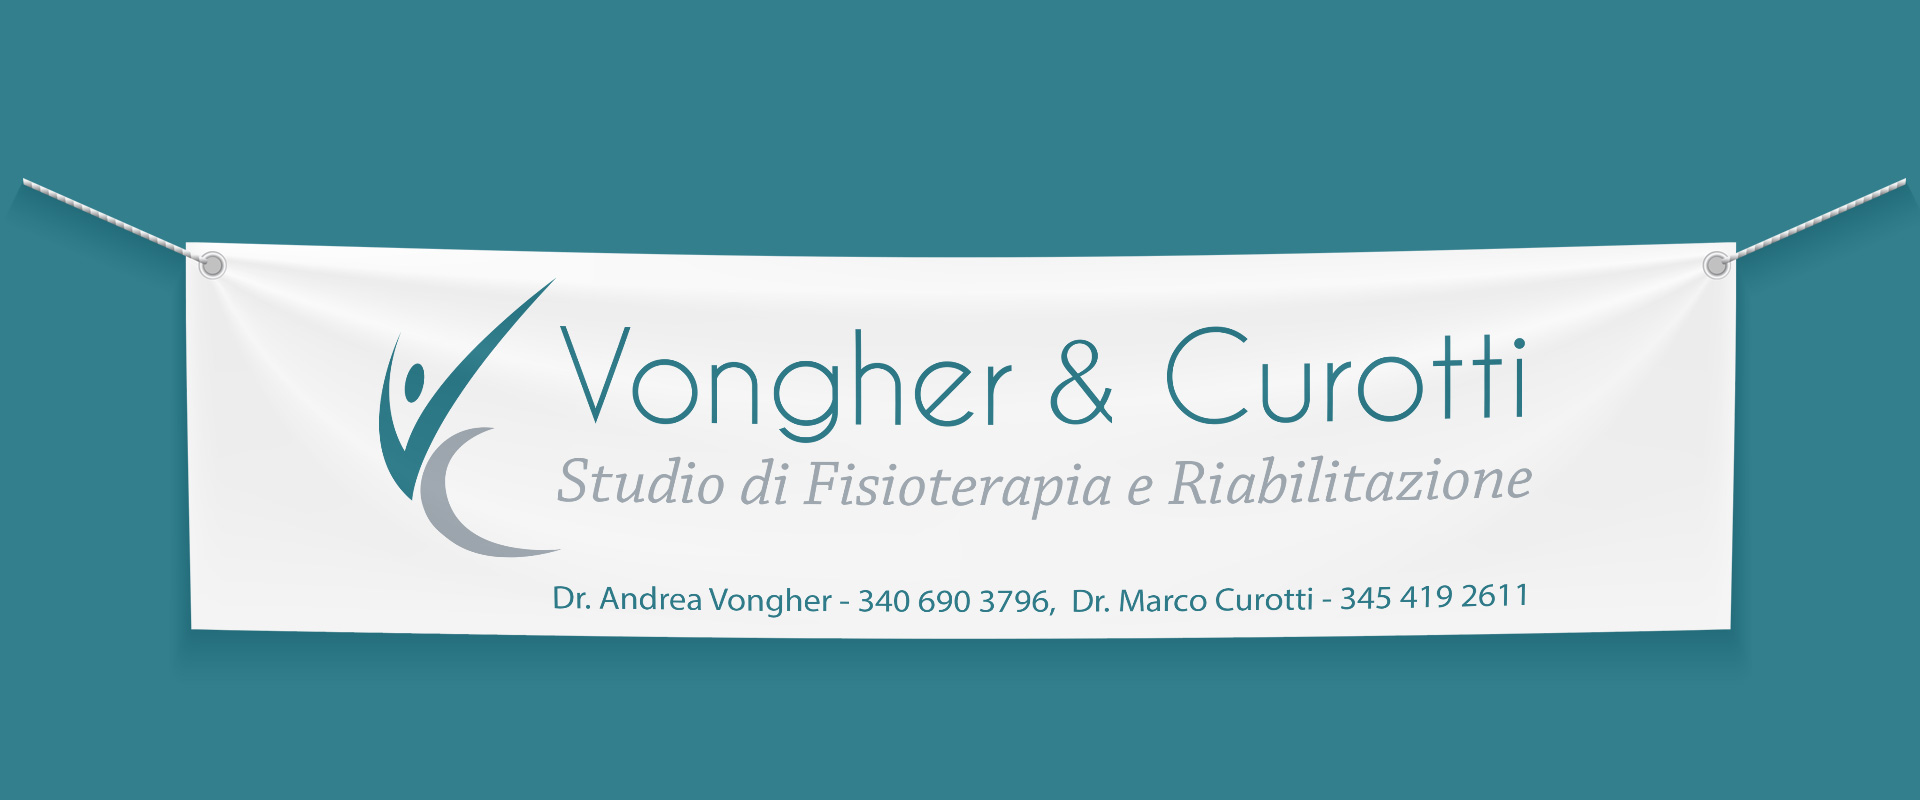 VONGHER-&-CUROTTI_SLIDER_3